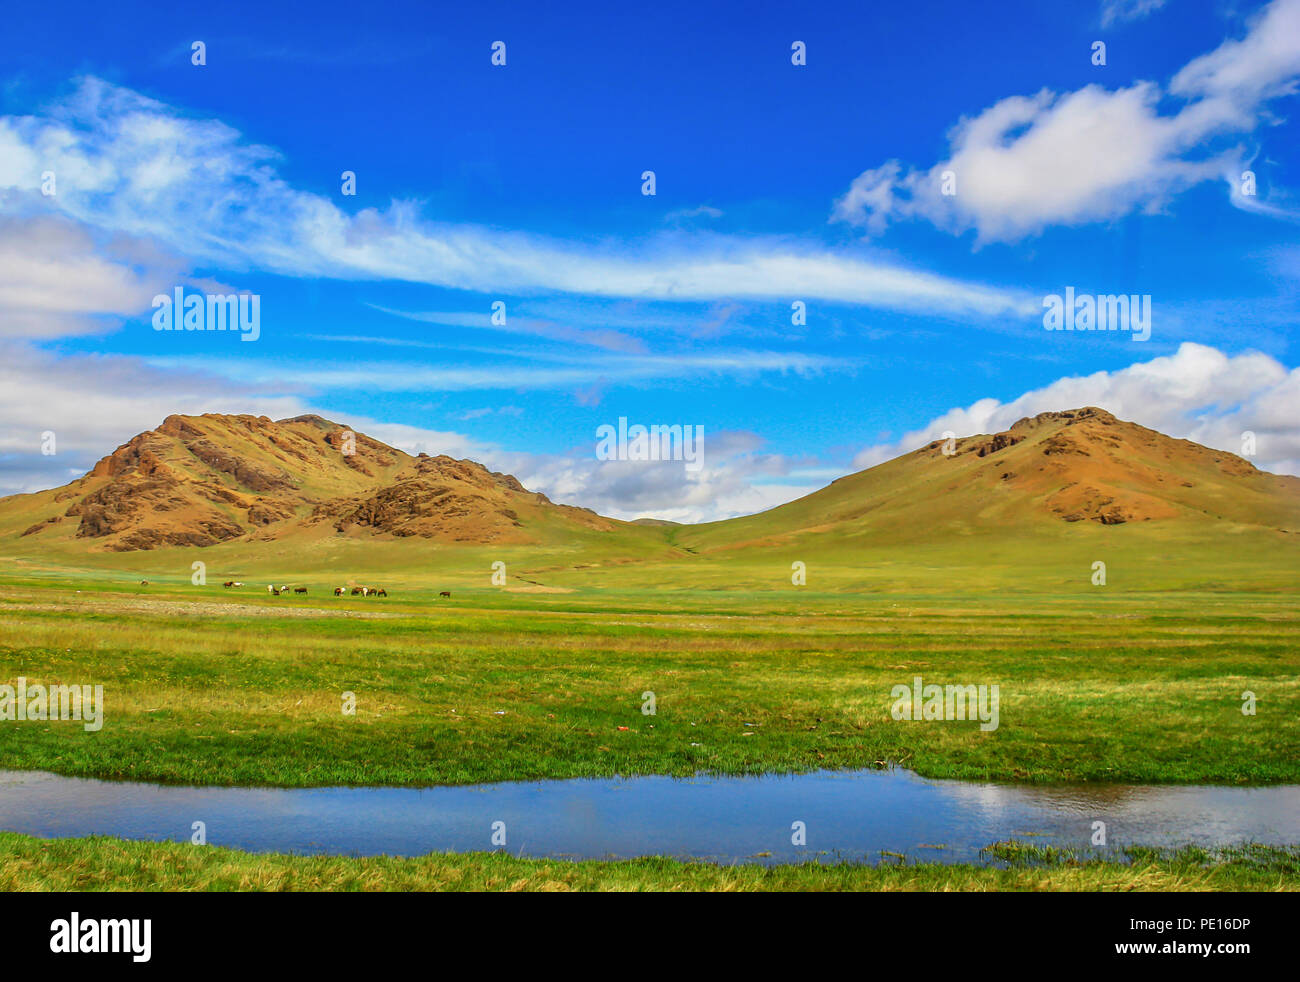 Deserto dei Gobi e Mongolia - uno dei deserti più grandi del mondo, con estati calde e inverni di congelamento, il Deserto del Gobi offre diversi paesaggi Foto Stock